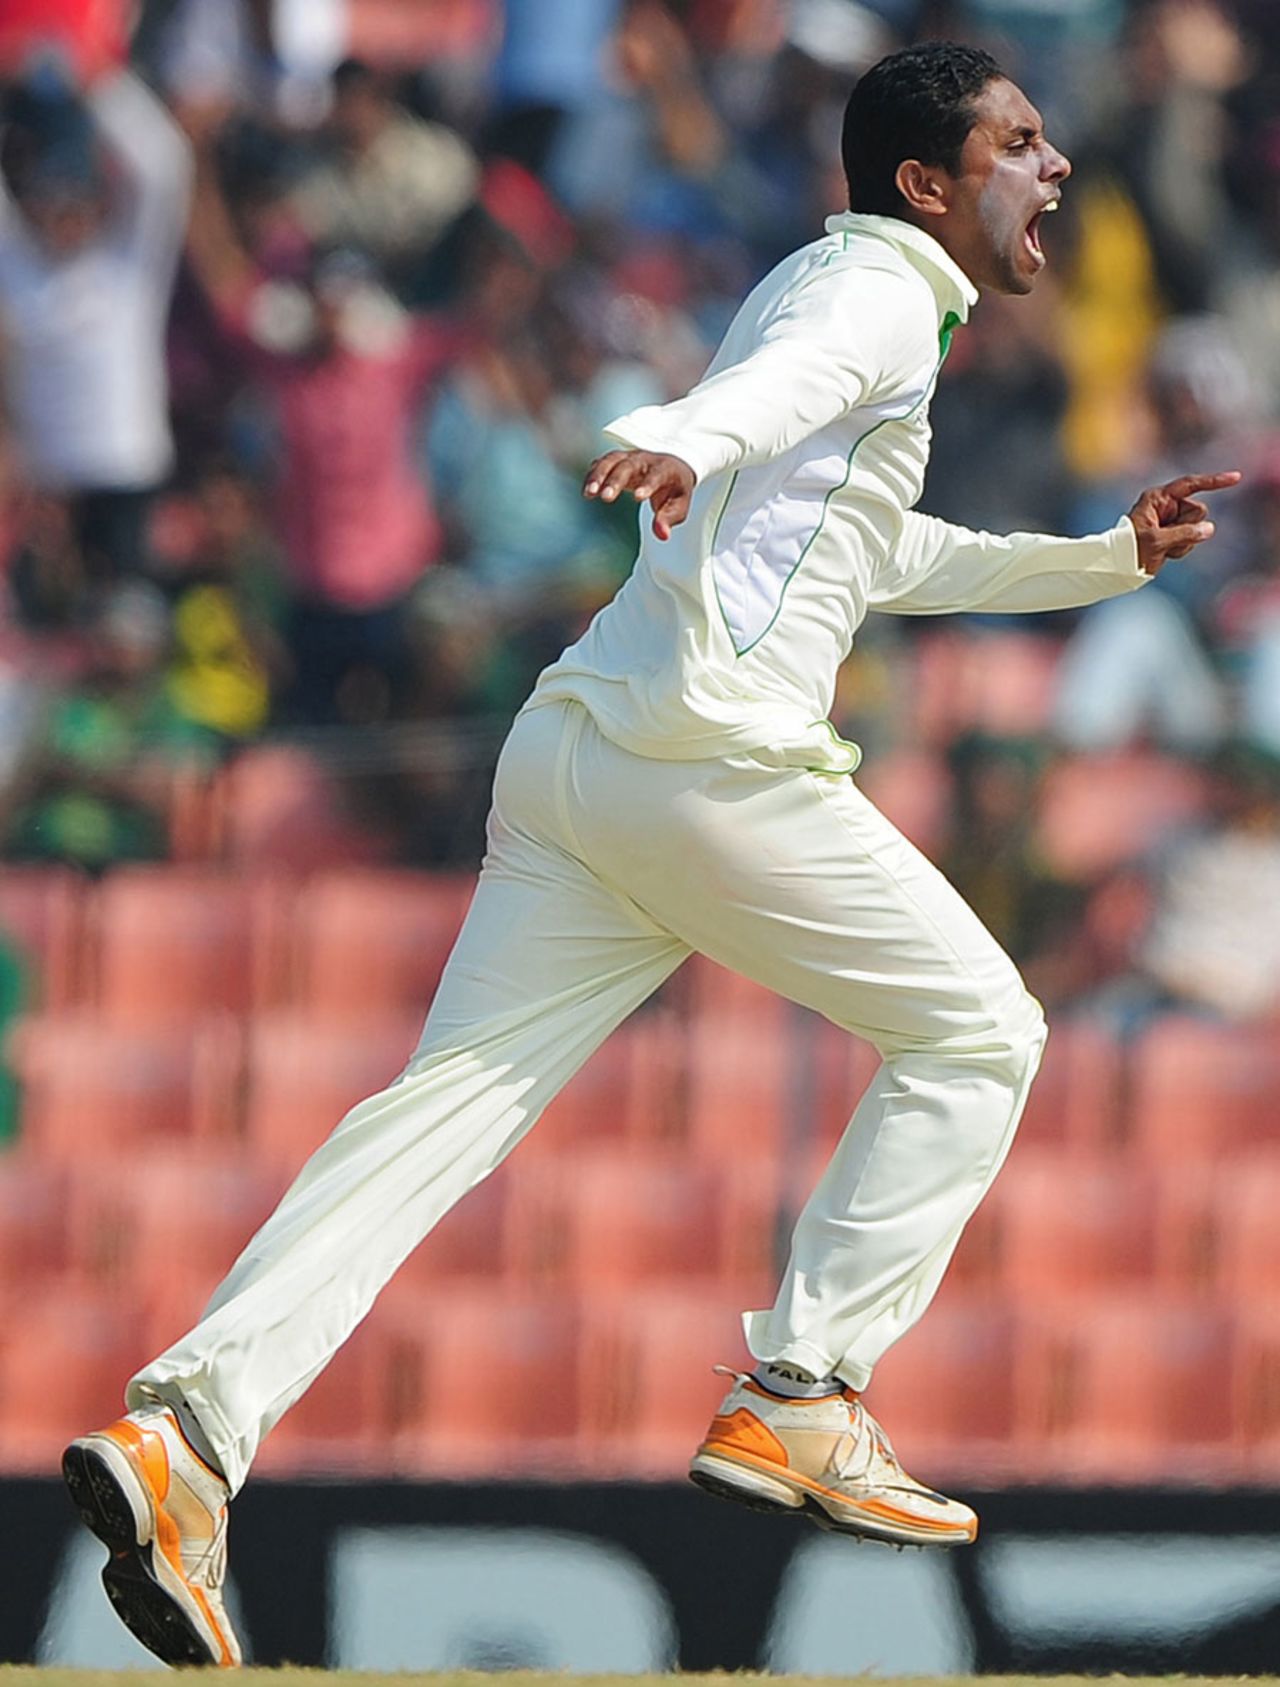 Sohag Gazi is ecstatic after dismissing Chris Gayle, Bangladesh v West Indies, 2nd Test, Khulna, 2nd day, November 22, 2012